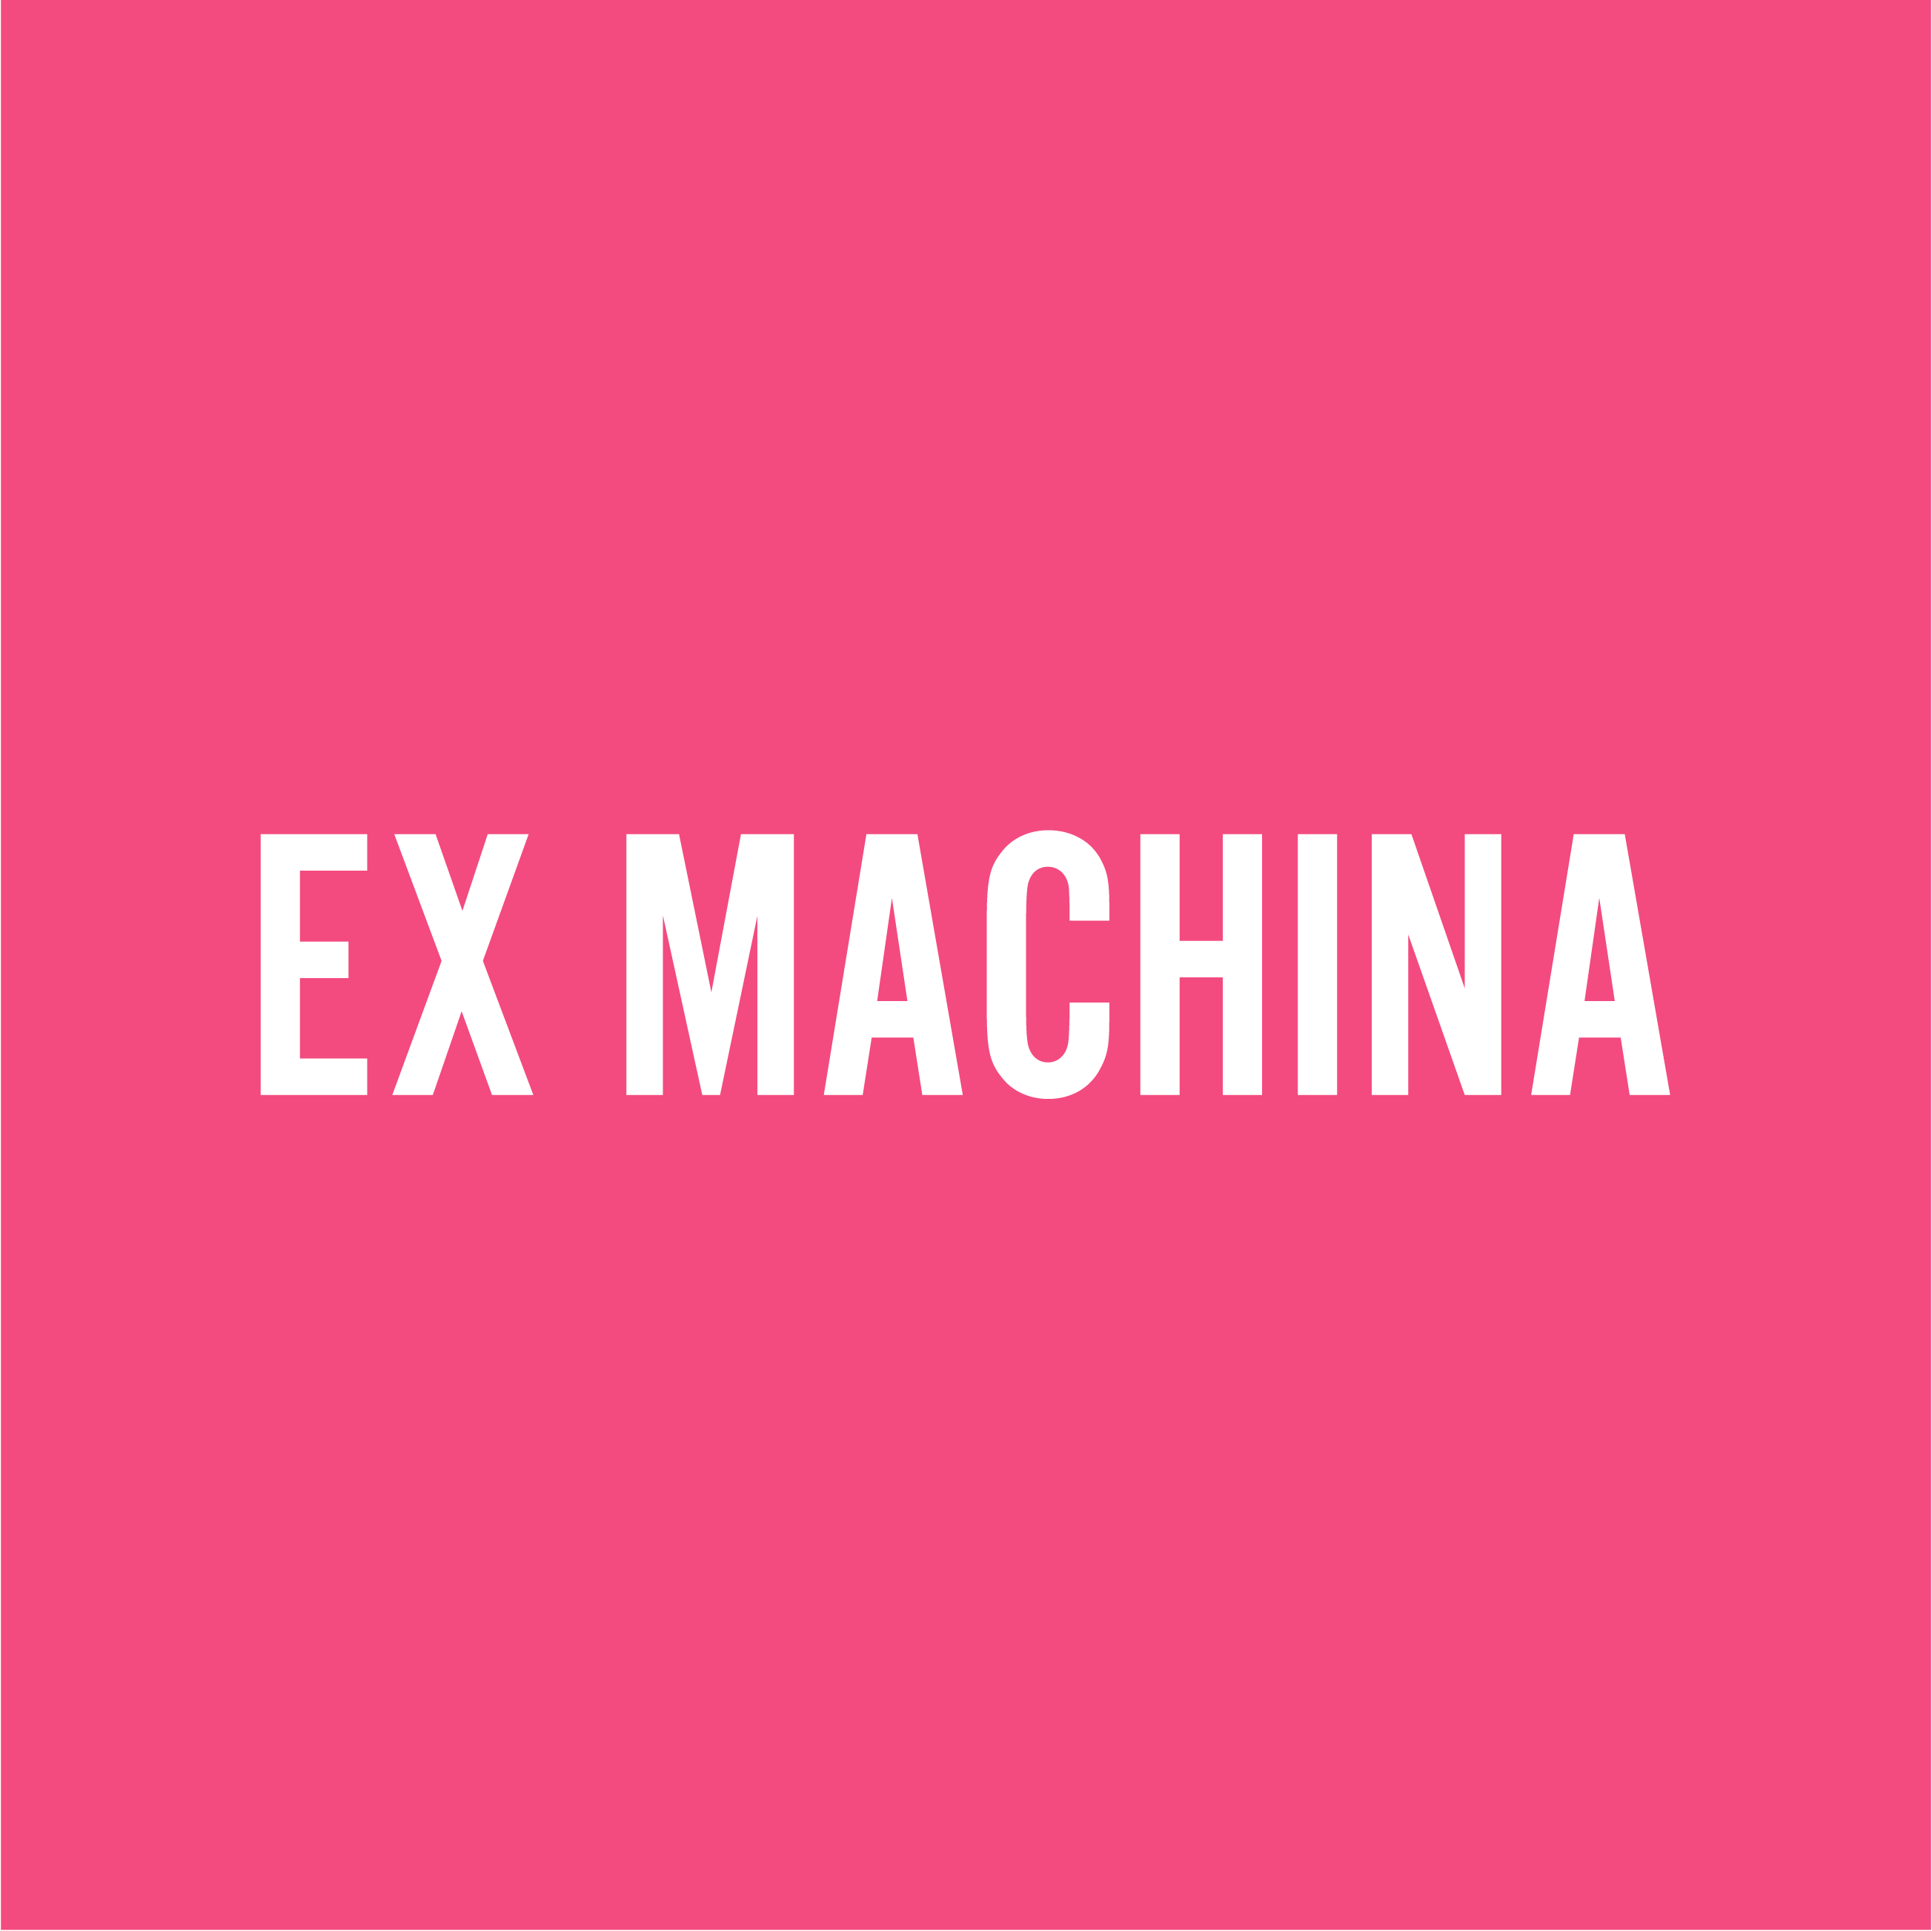 Club Image for EX MACHINA RT